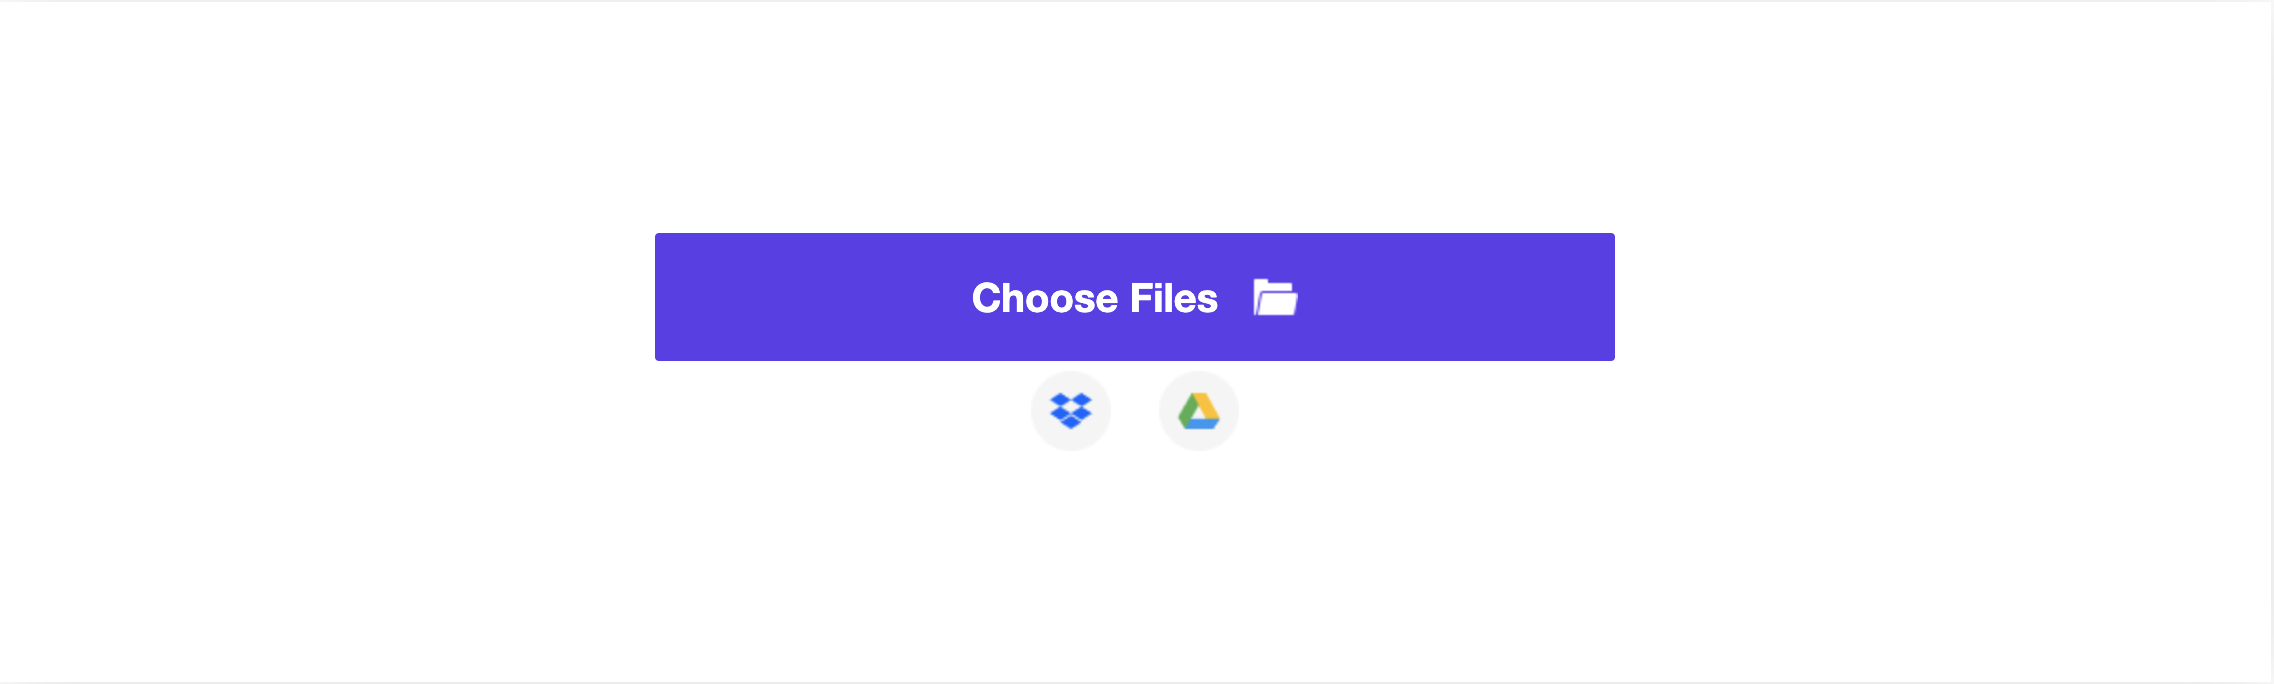 GIF-Datei zum Komprimieren hochladen